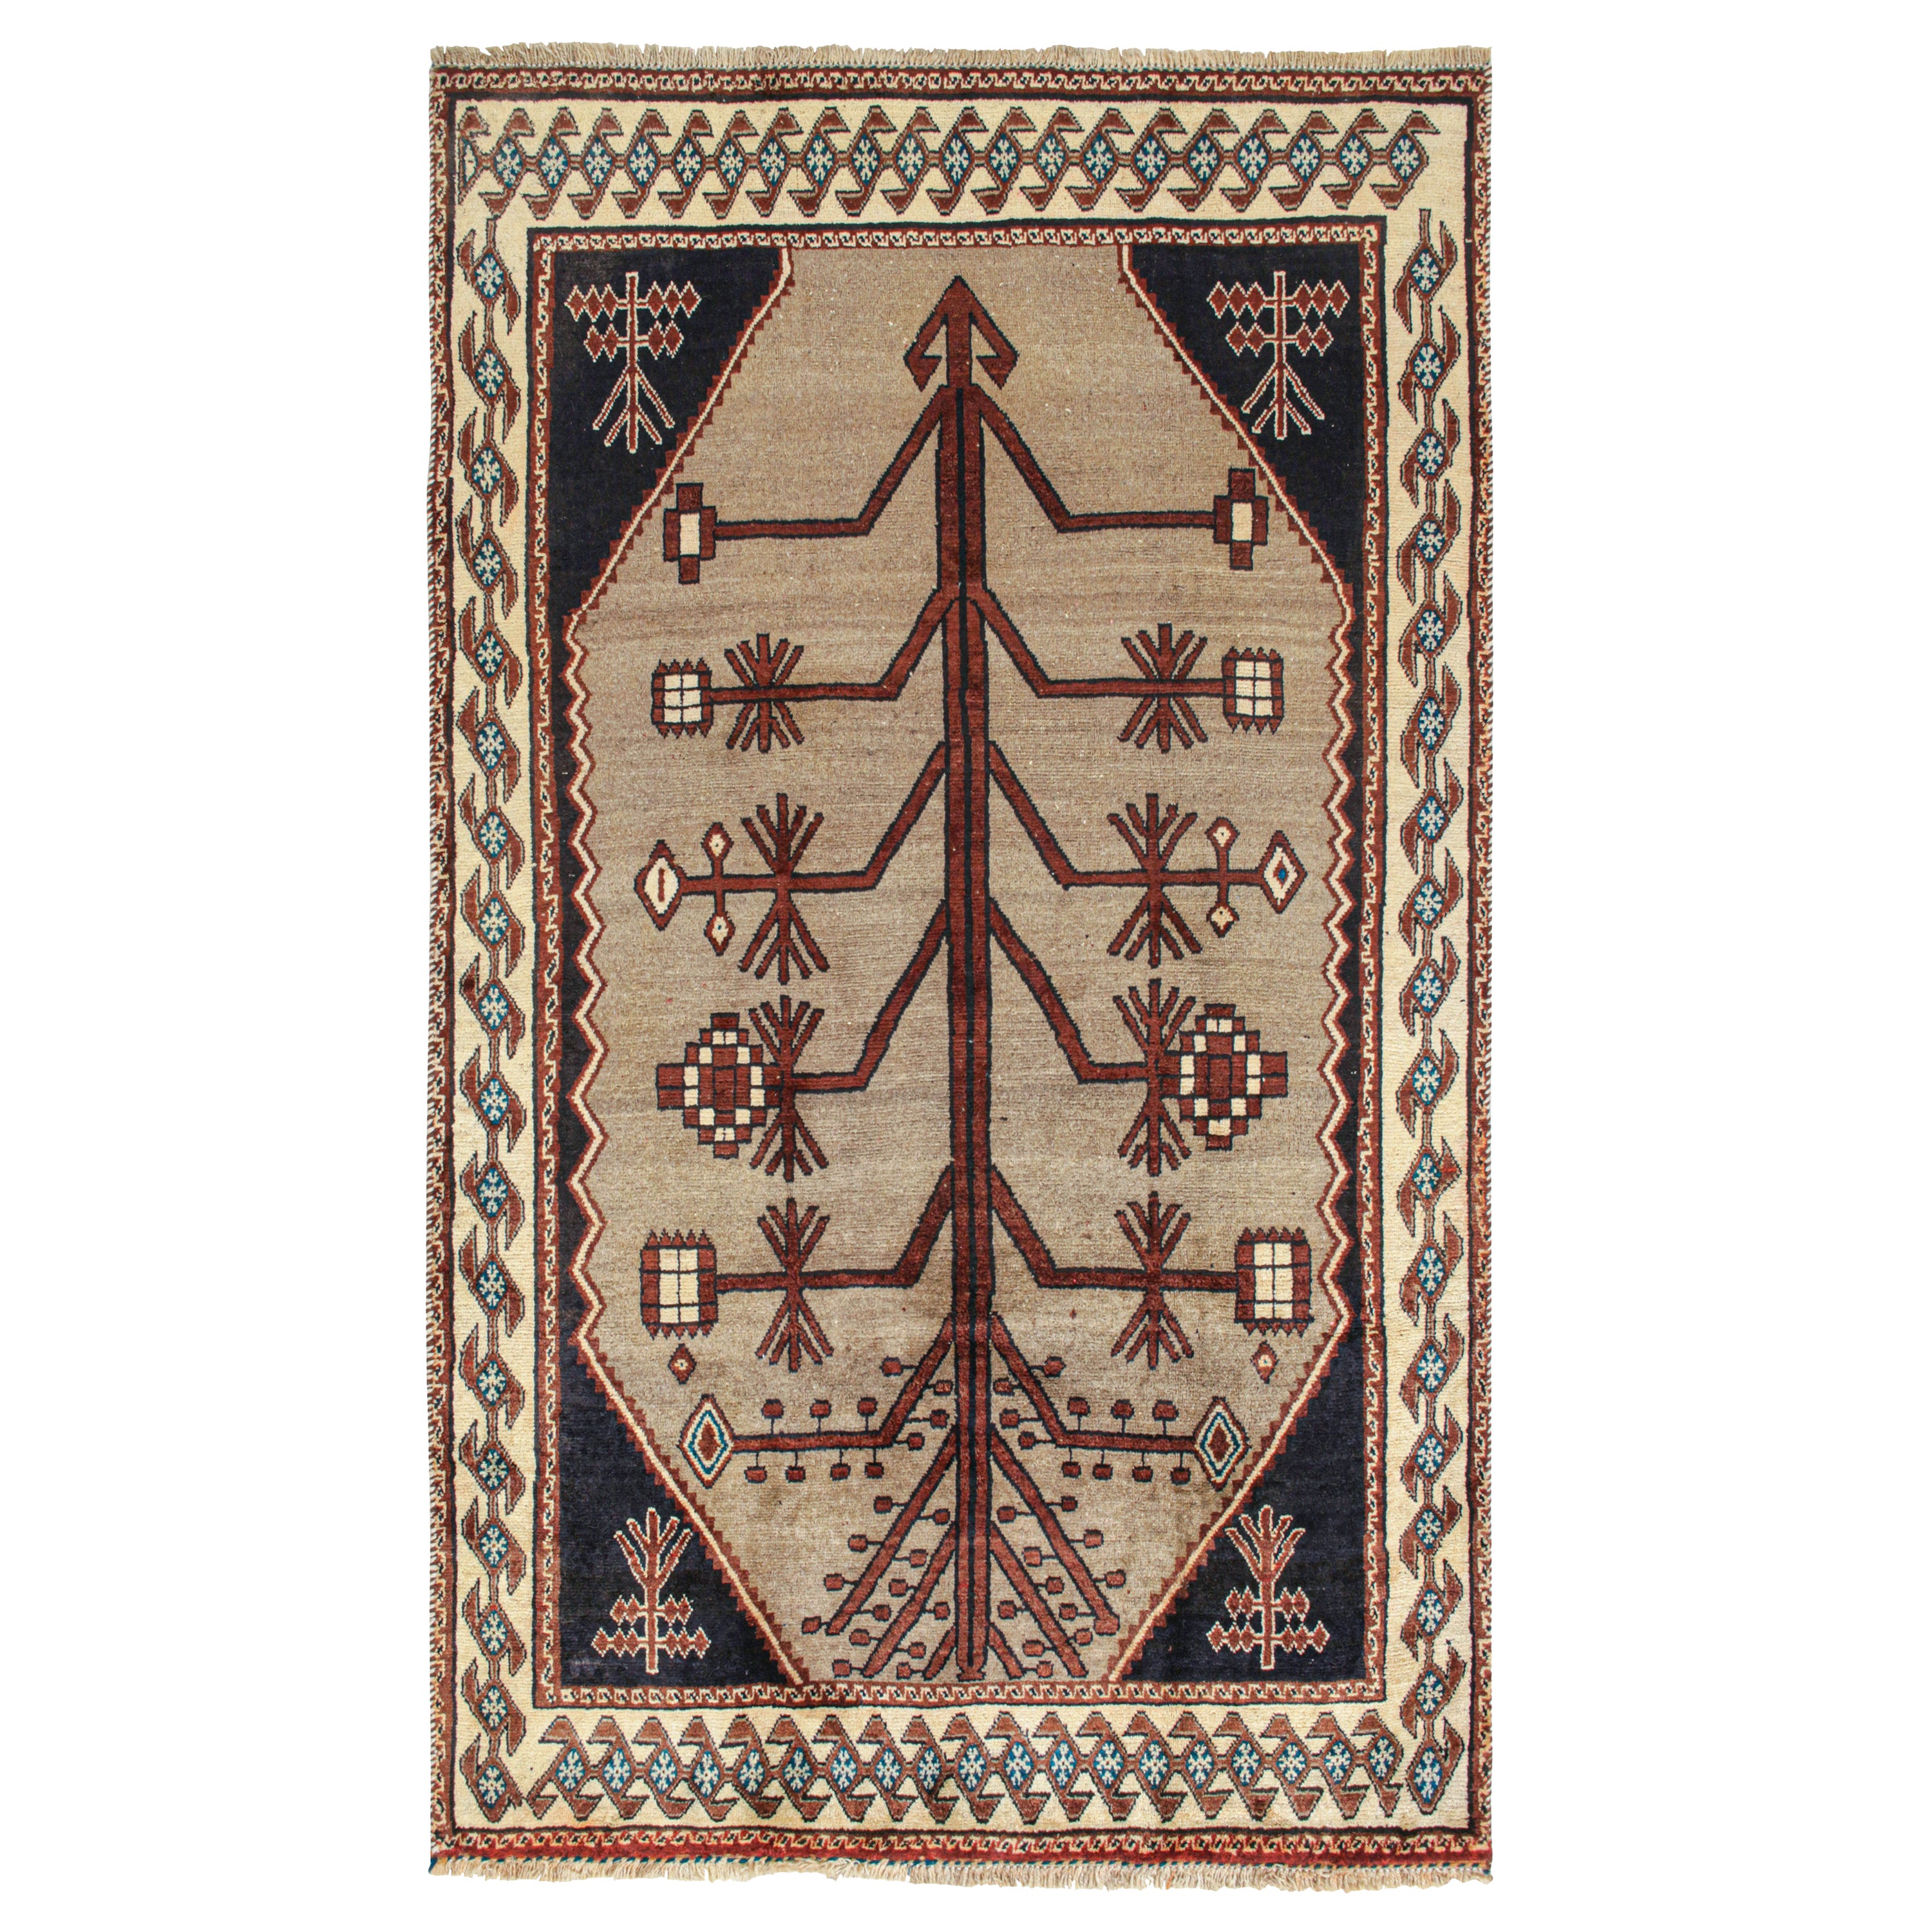 Vintage Persian Tribal rug in Beige with Brown Geometric Pattern